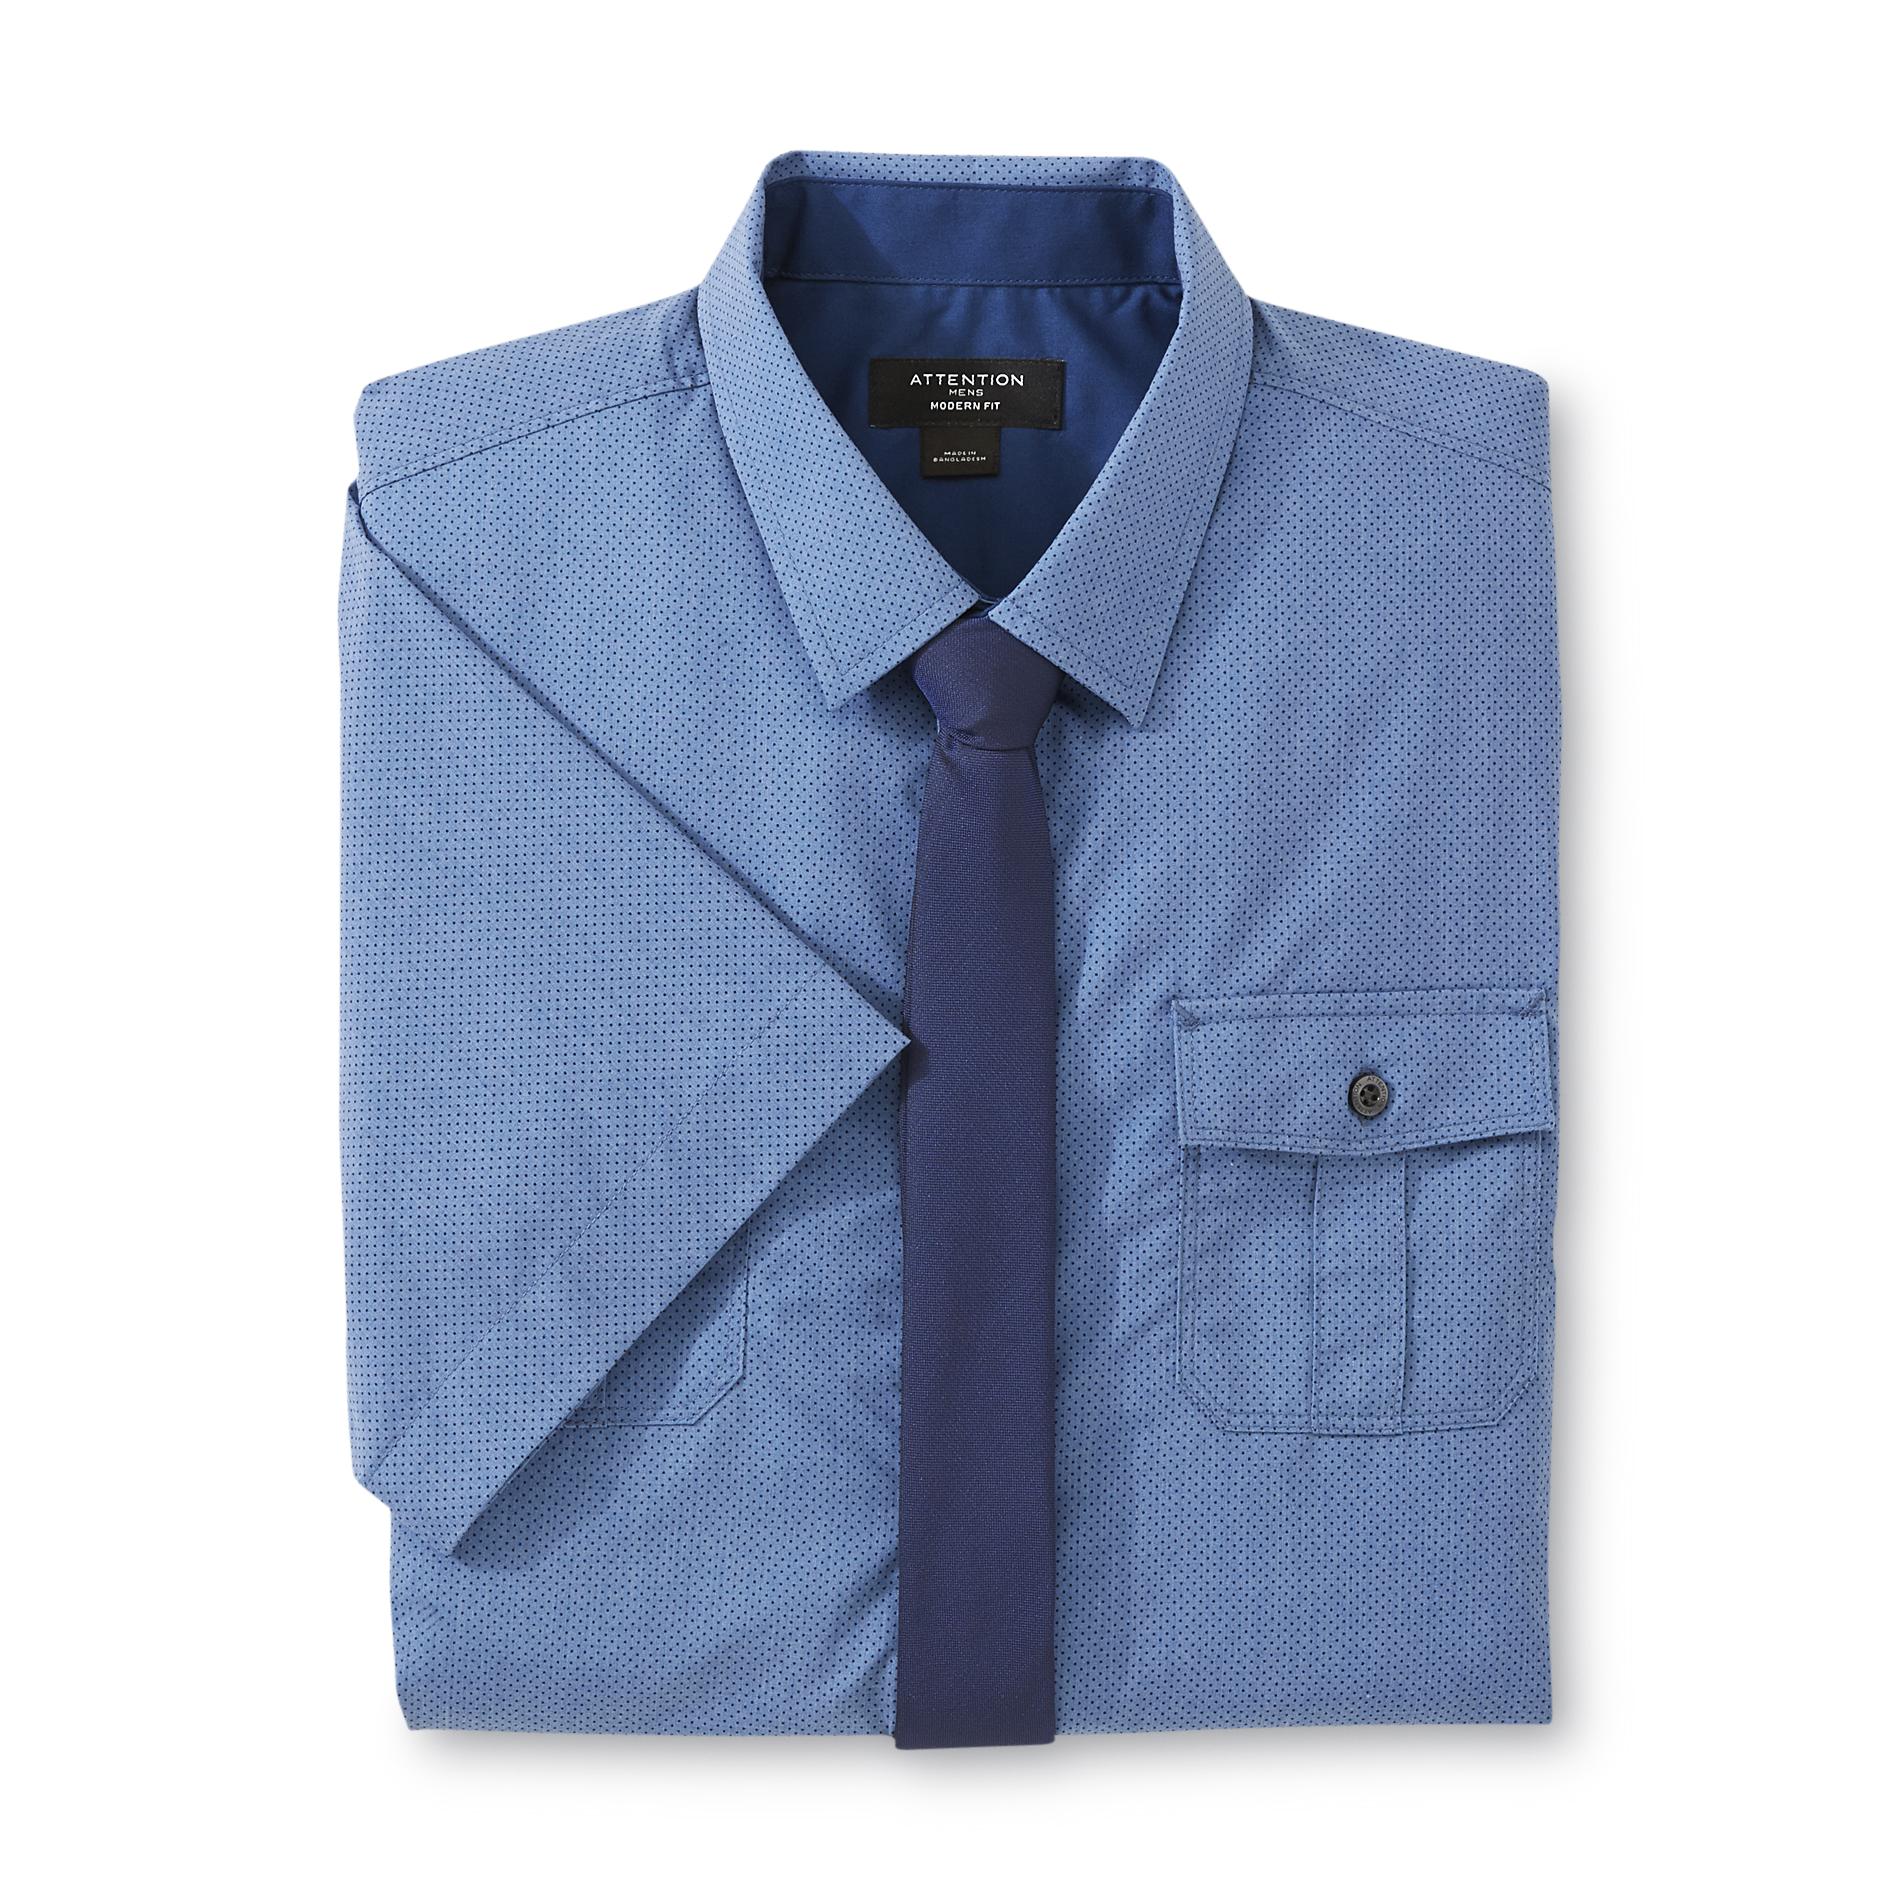 Attention Men's Short-Sleeve Dress Shirt & Necktie - Dots